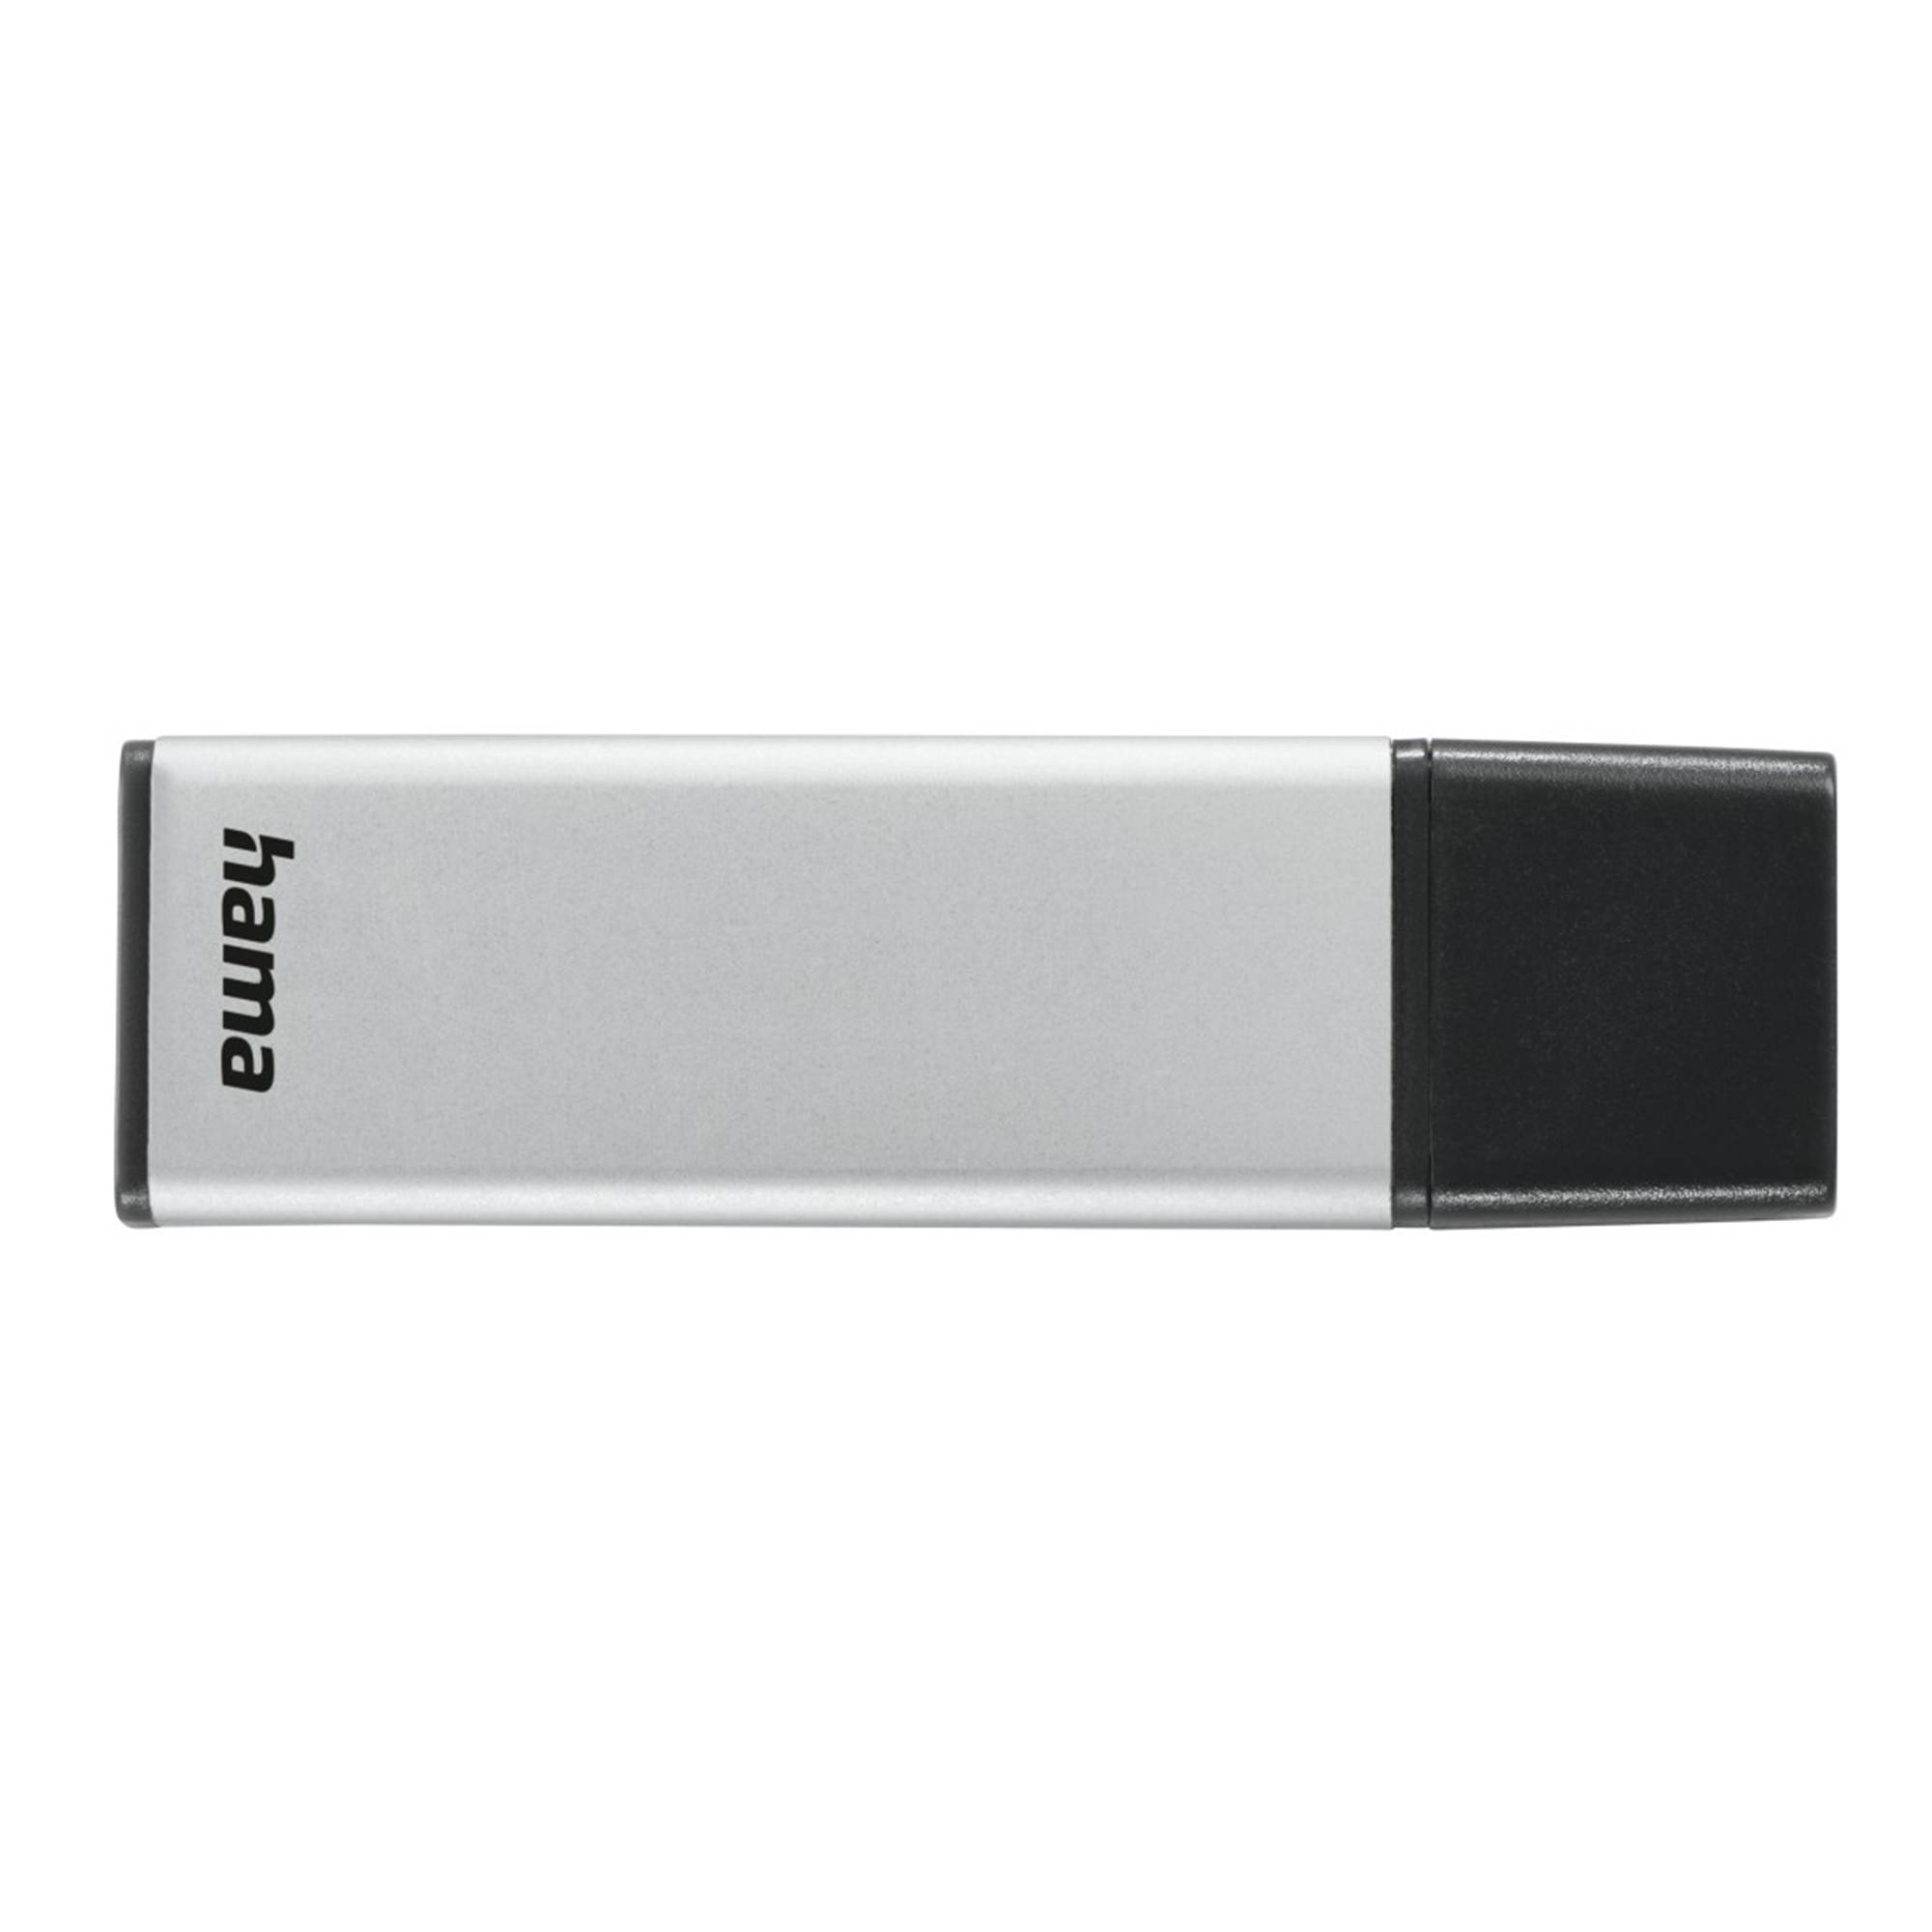 Classic GB) 16 (Silber, HAMA GB USB-Stick 16